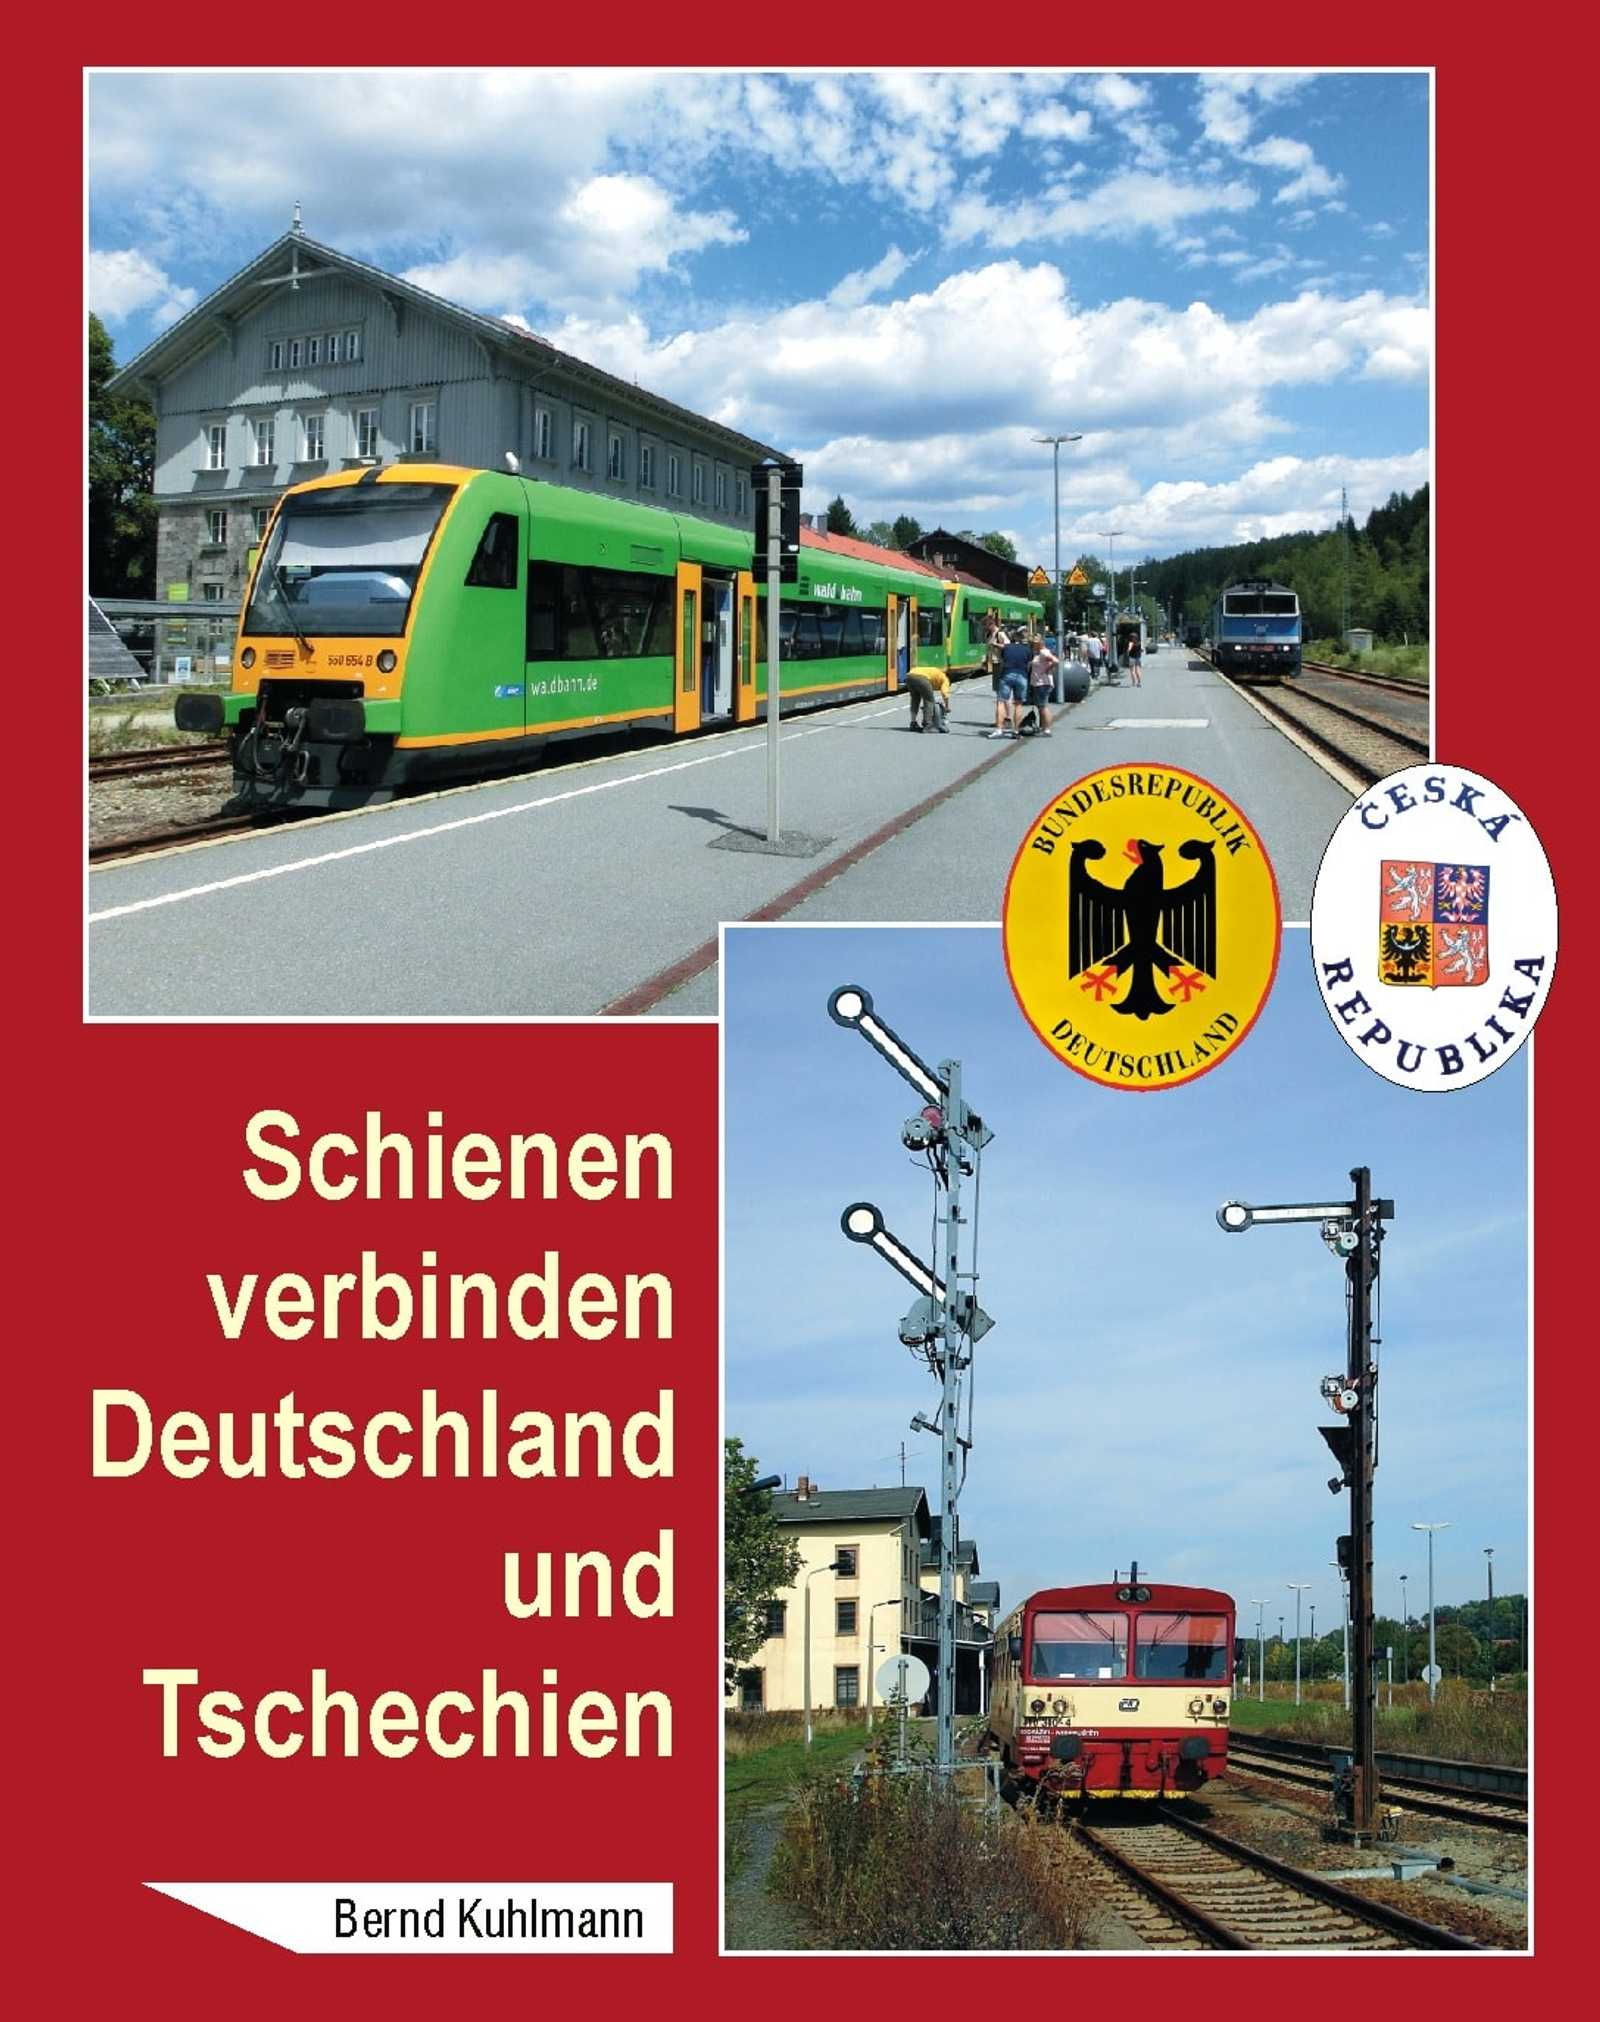 Buchcover: Bernd Kuhlmann - Schienen verbinden Deutschland und Tschechien